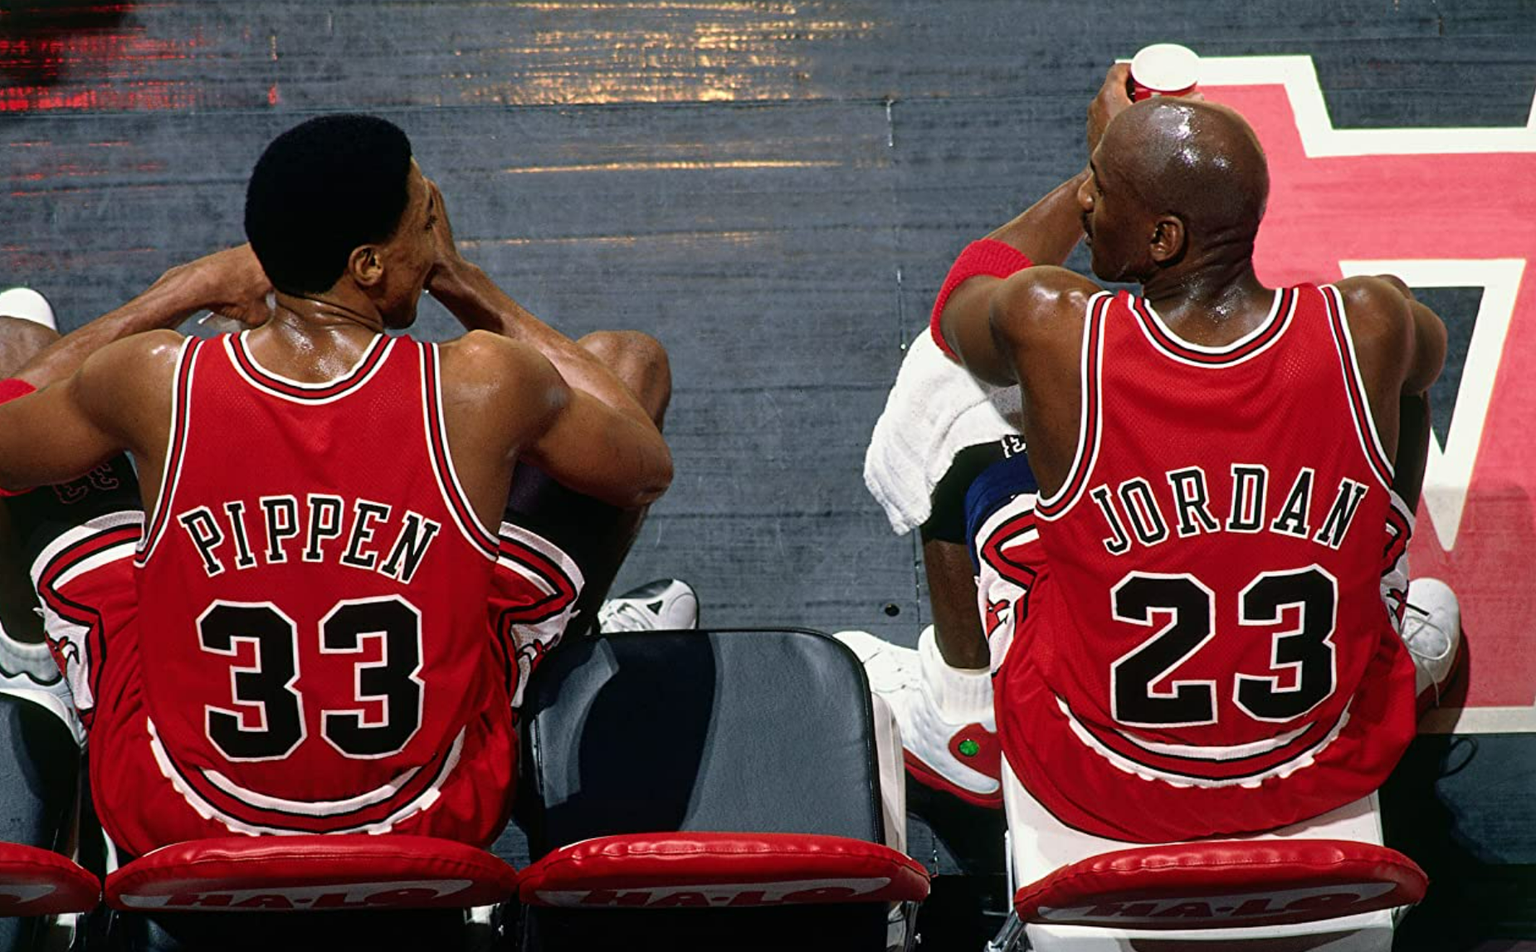 Scottie Pippen ja Michael Jordan. Dünaamiline duo, kes mängis NBA selle ajaloo suurimaks. Pippen muide teenis suurema osa oma karjäärist väga närust raha ja ega Jordanigi mängijapalk enne tema kaht viimast hooaega midagi erilist polnud. 